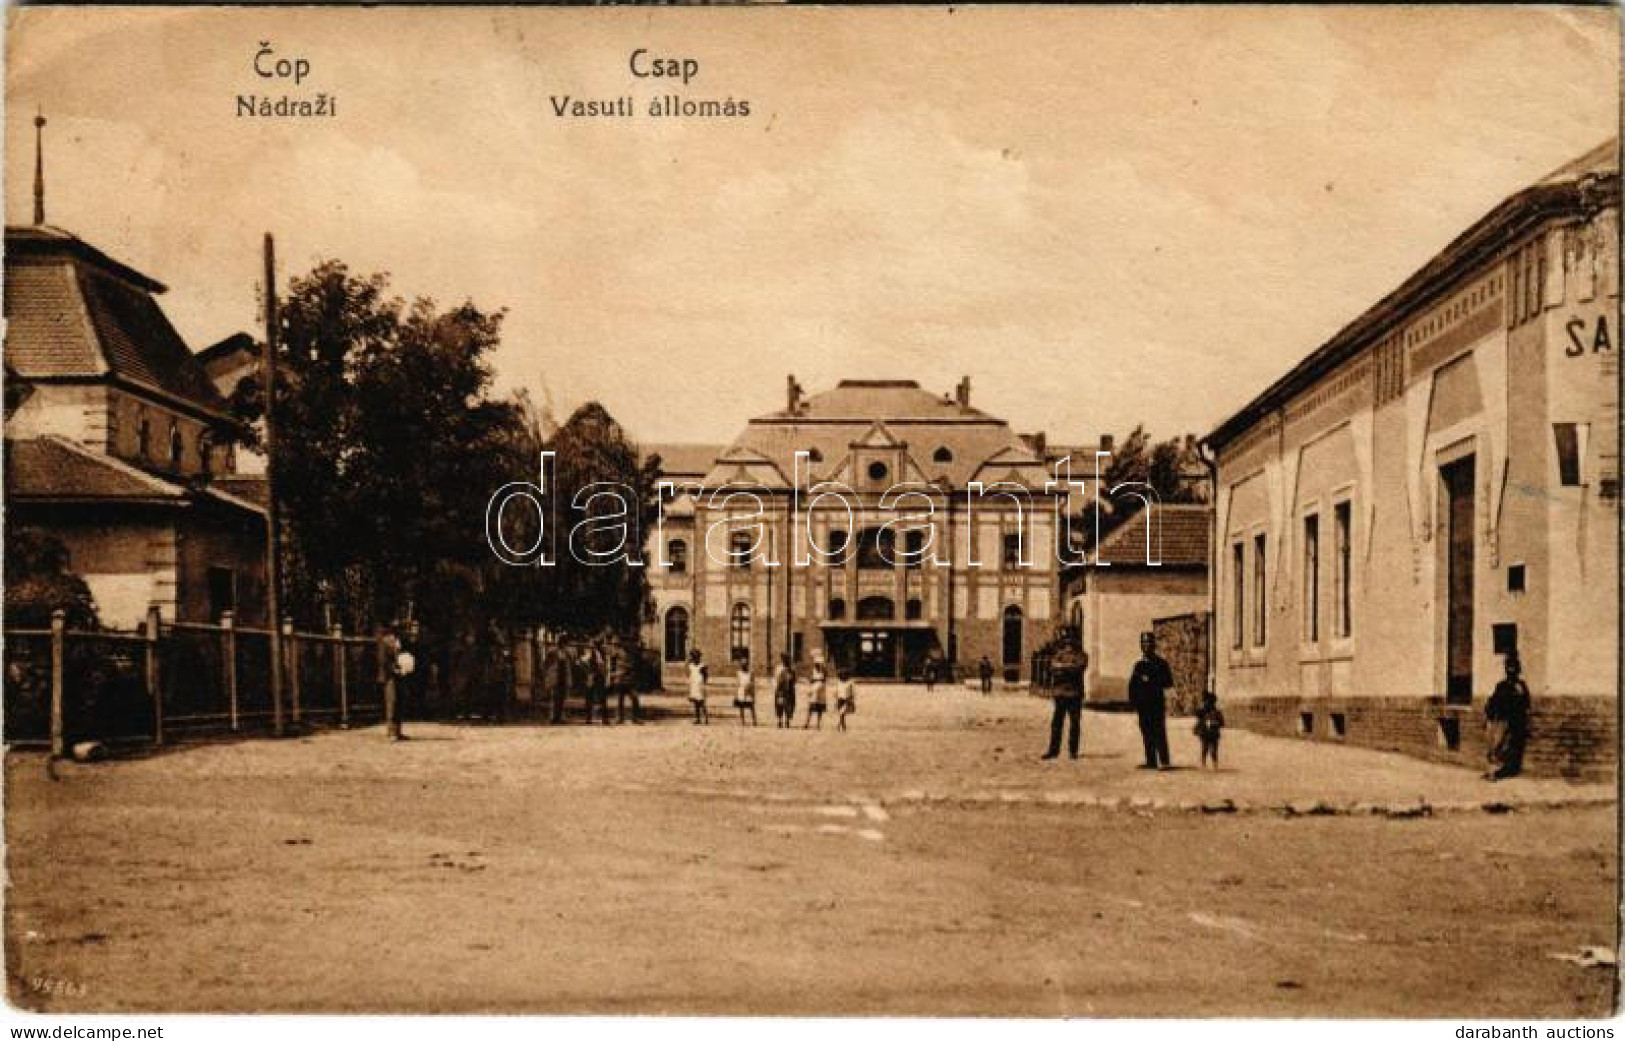 T2/T3 1922 Csap, Cop, Chop; Nádrazí / Vasútállomás / Railway Station (EK) - Unclassified